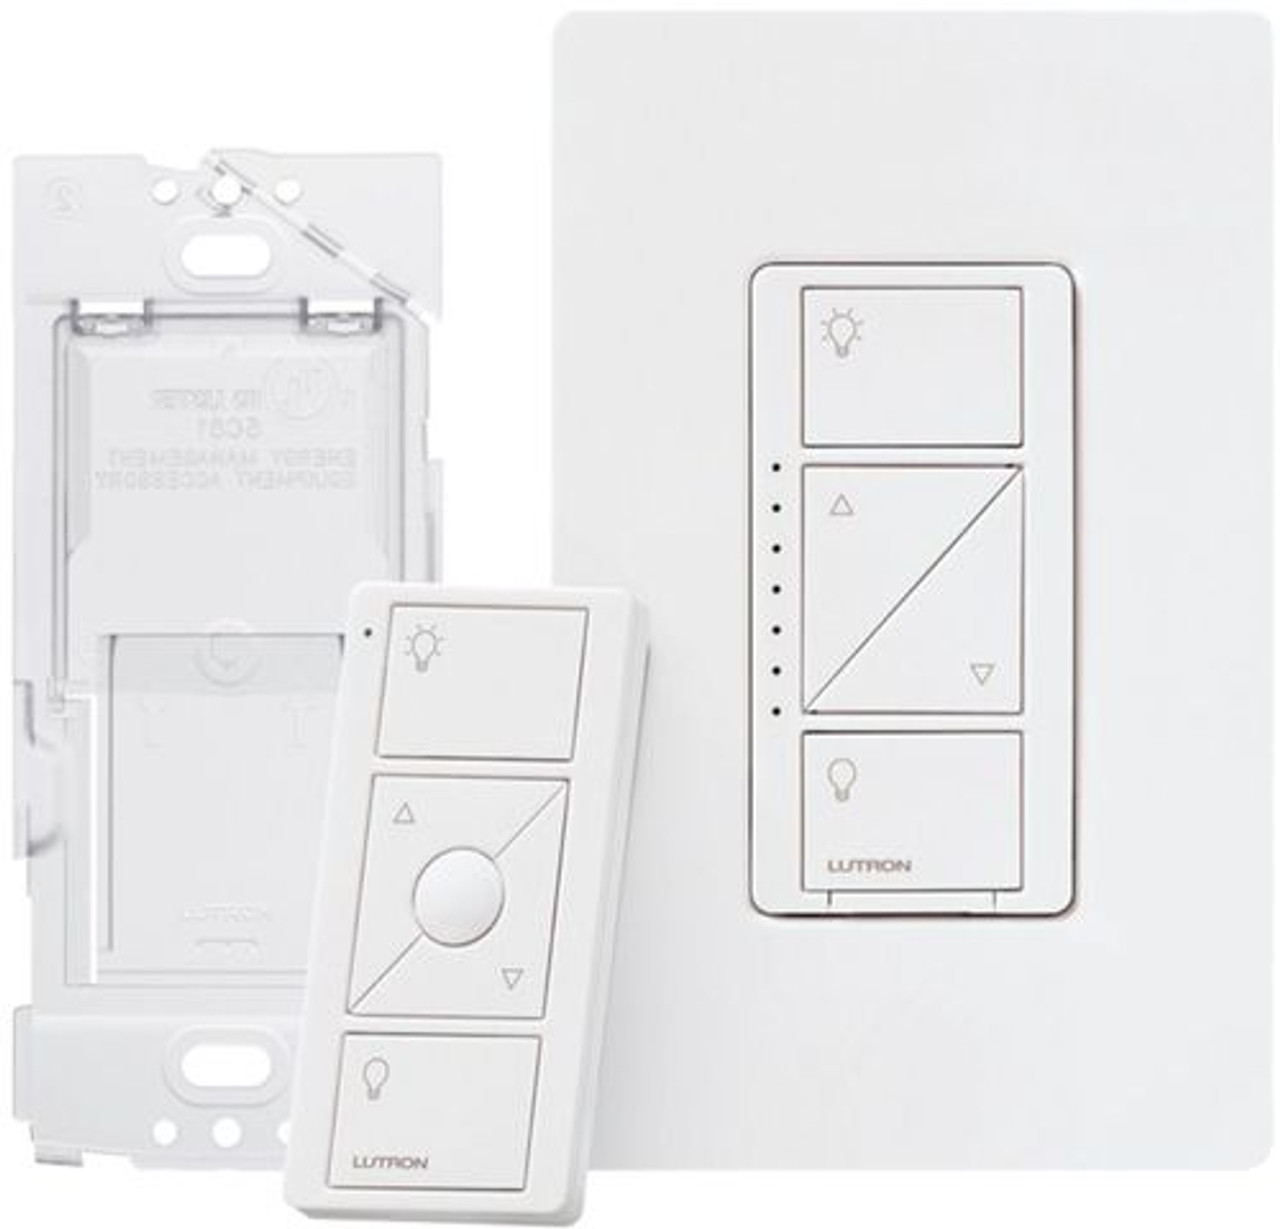 Lutron - Caseta Smart Dimmer Switch 3-Way Kit - White - White